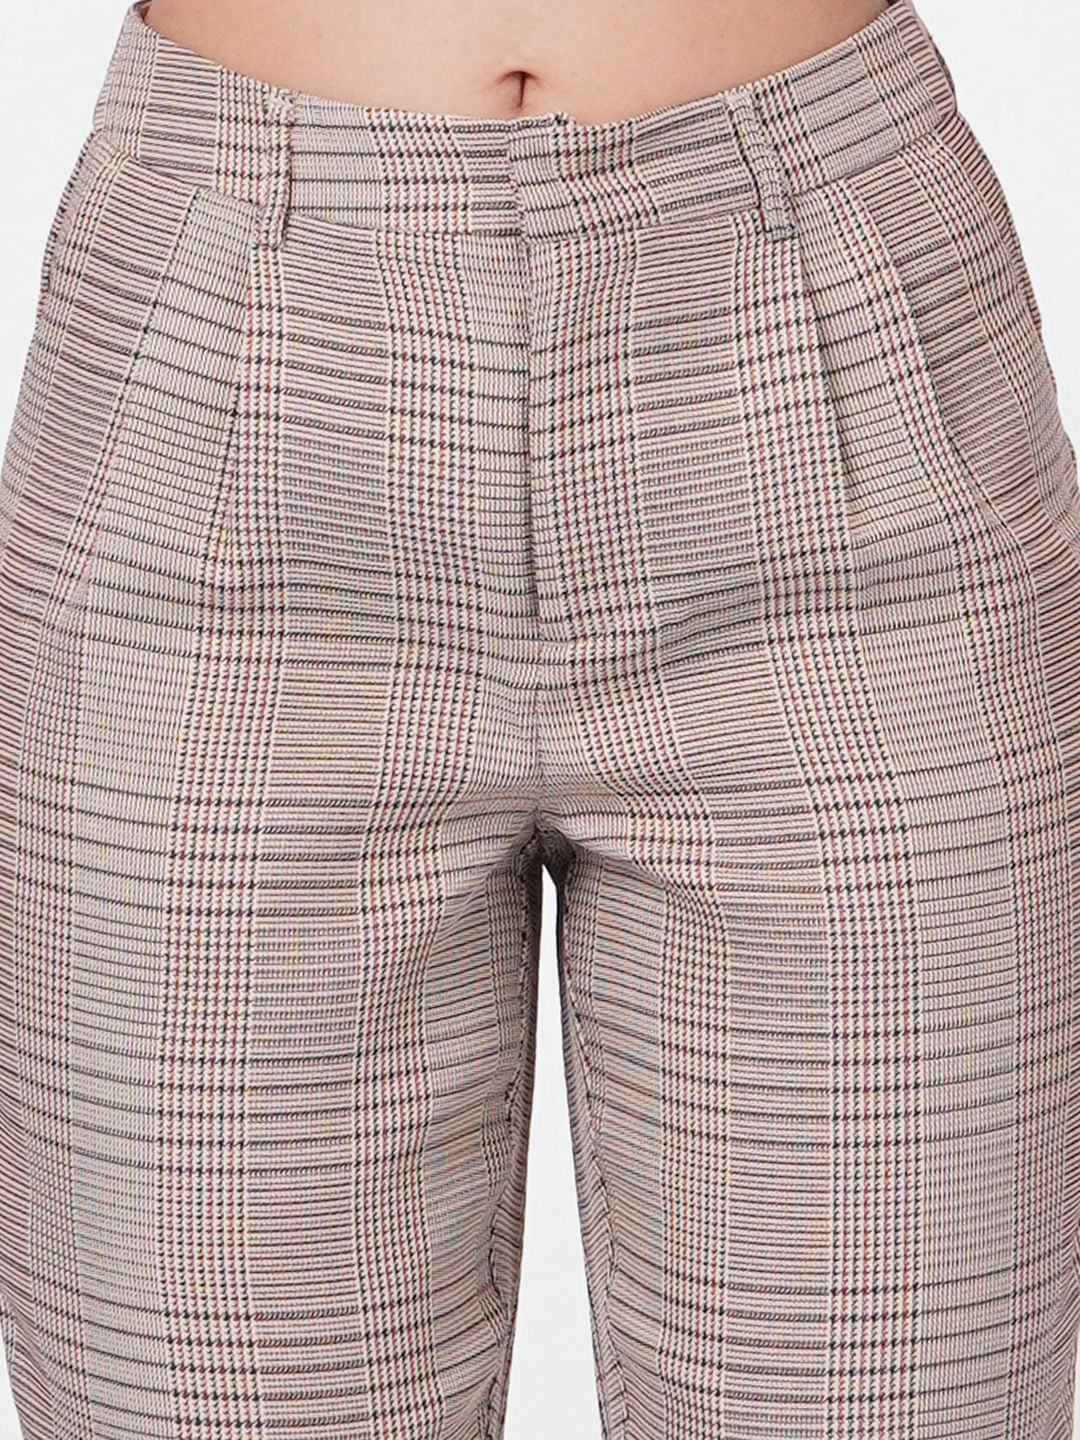 Buy Ben Sherman Steel Checked Slim Fit Trouser for Men Online  Tata CLiQ  Luxury